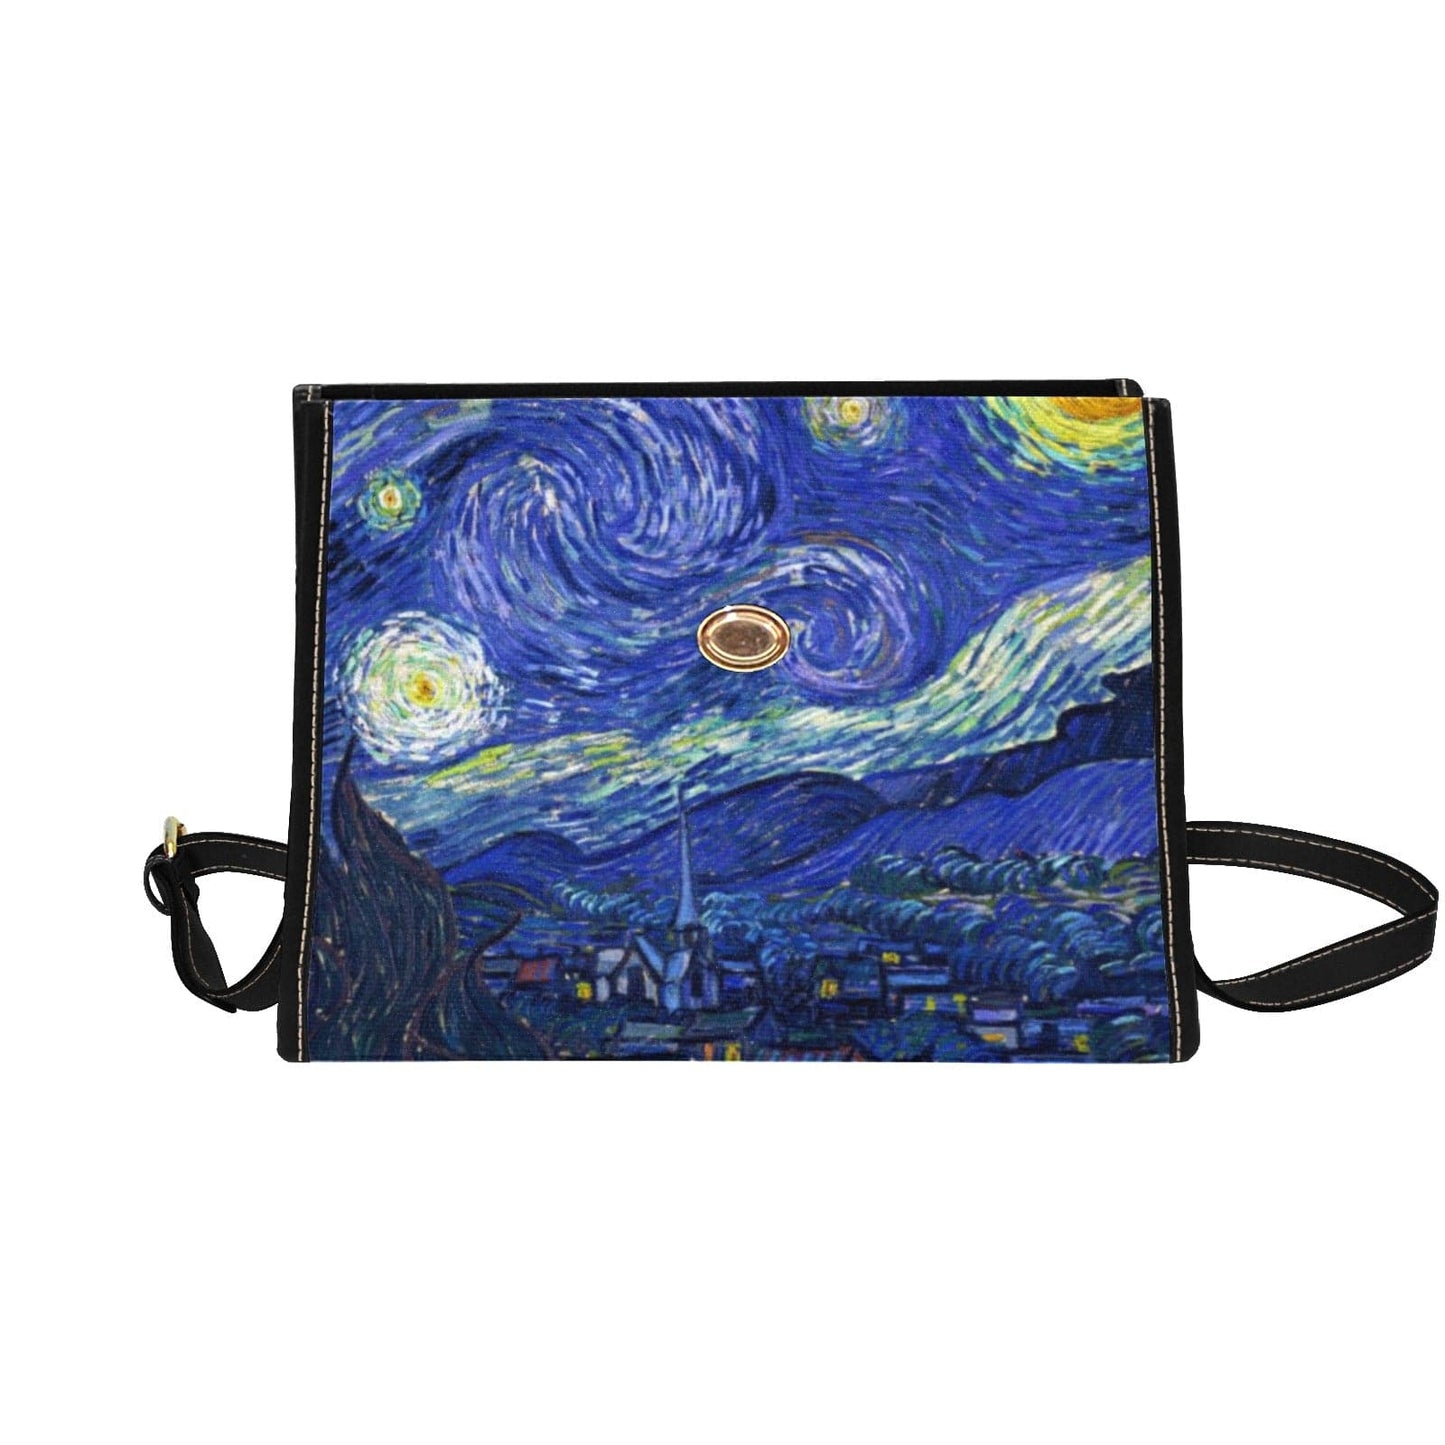 blue Starry Night satchel handbag at Gallery Serpentine 1